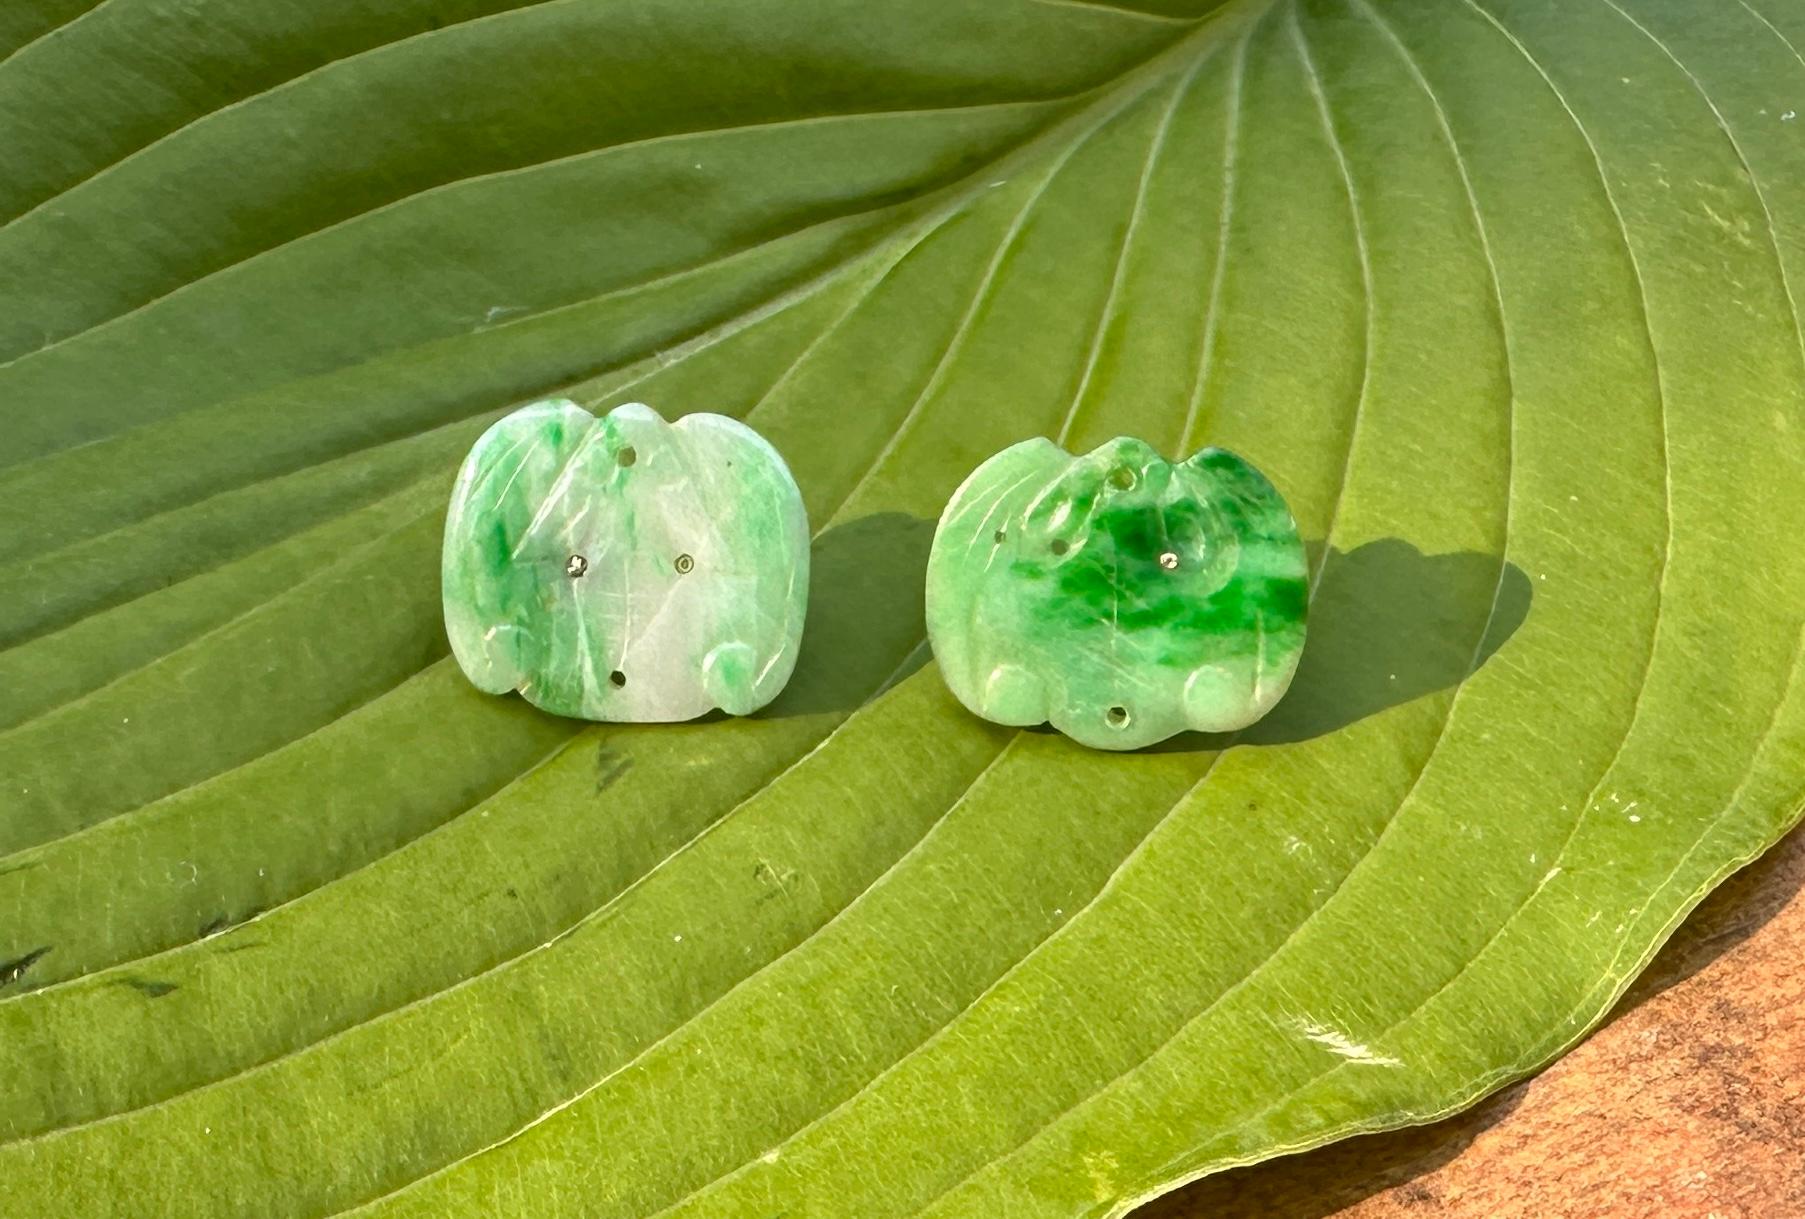 Voici une ravissante paire de boucles d'oreilles anciennes en jade chinois, en forme de chauve-souris.  Ces très rares boucles d'oreilles en jade sont toutes sculptées à la main en forme de chauve-souris ailée. 
Ils sont absolument fabuleux.   Dans